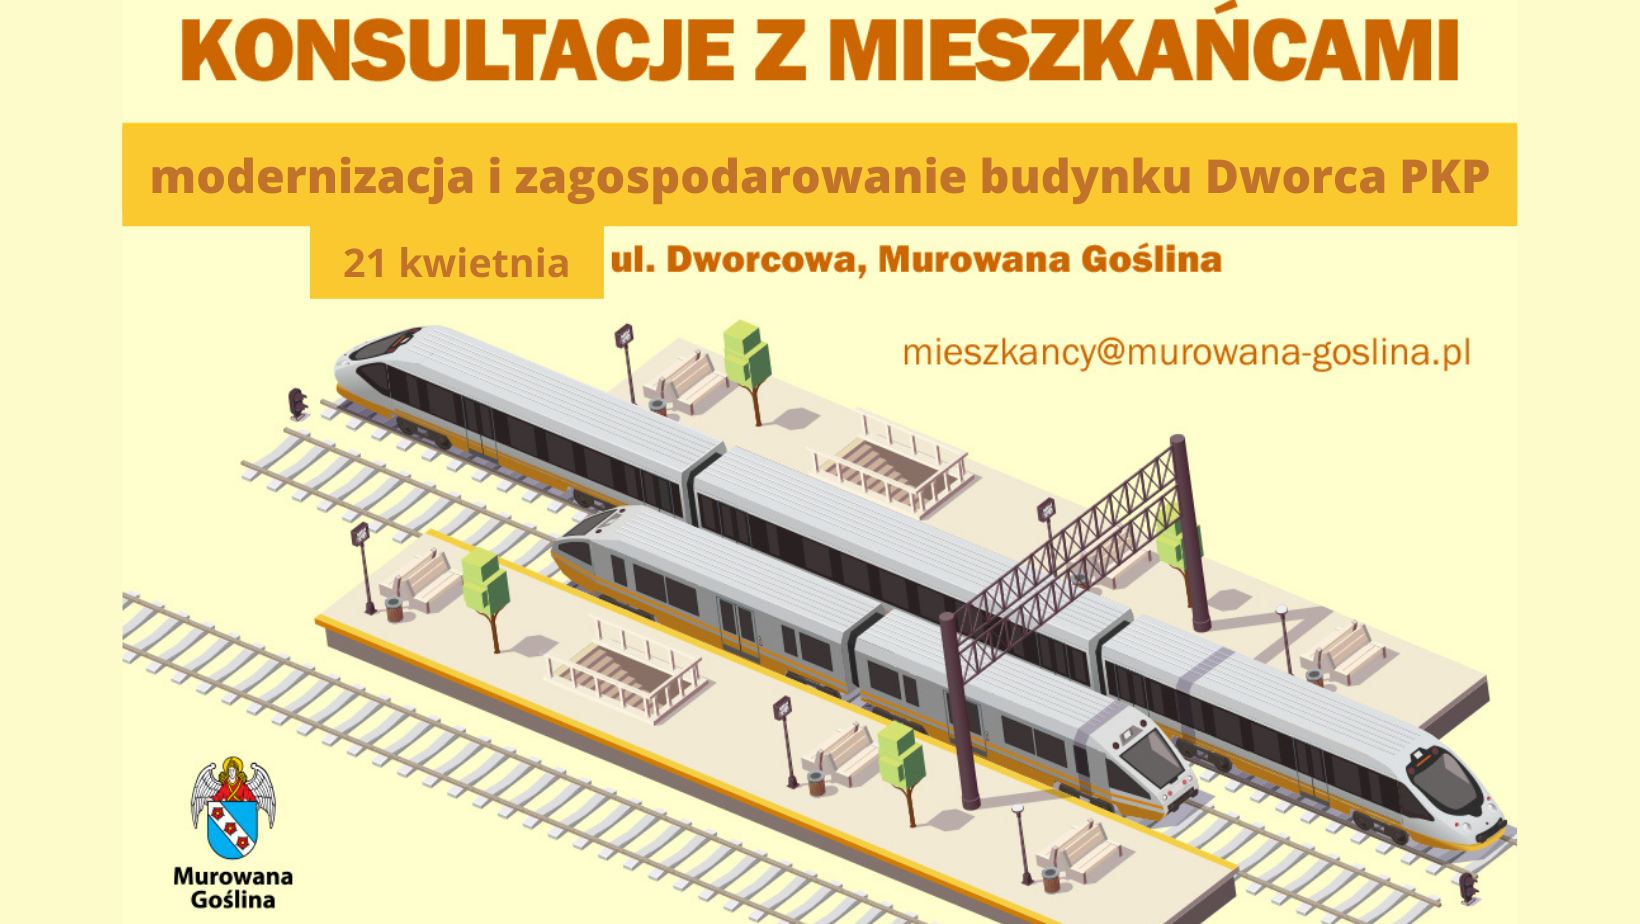 konsultacje z mieszkańcami, modernizacja i zagospodarowanie budynku dworca PKP Murowana Goślina, mieszkancy@murowana-goslina.pl